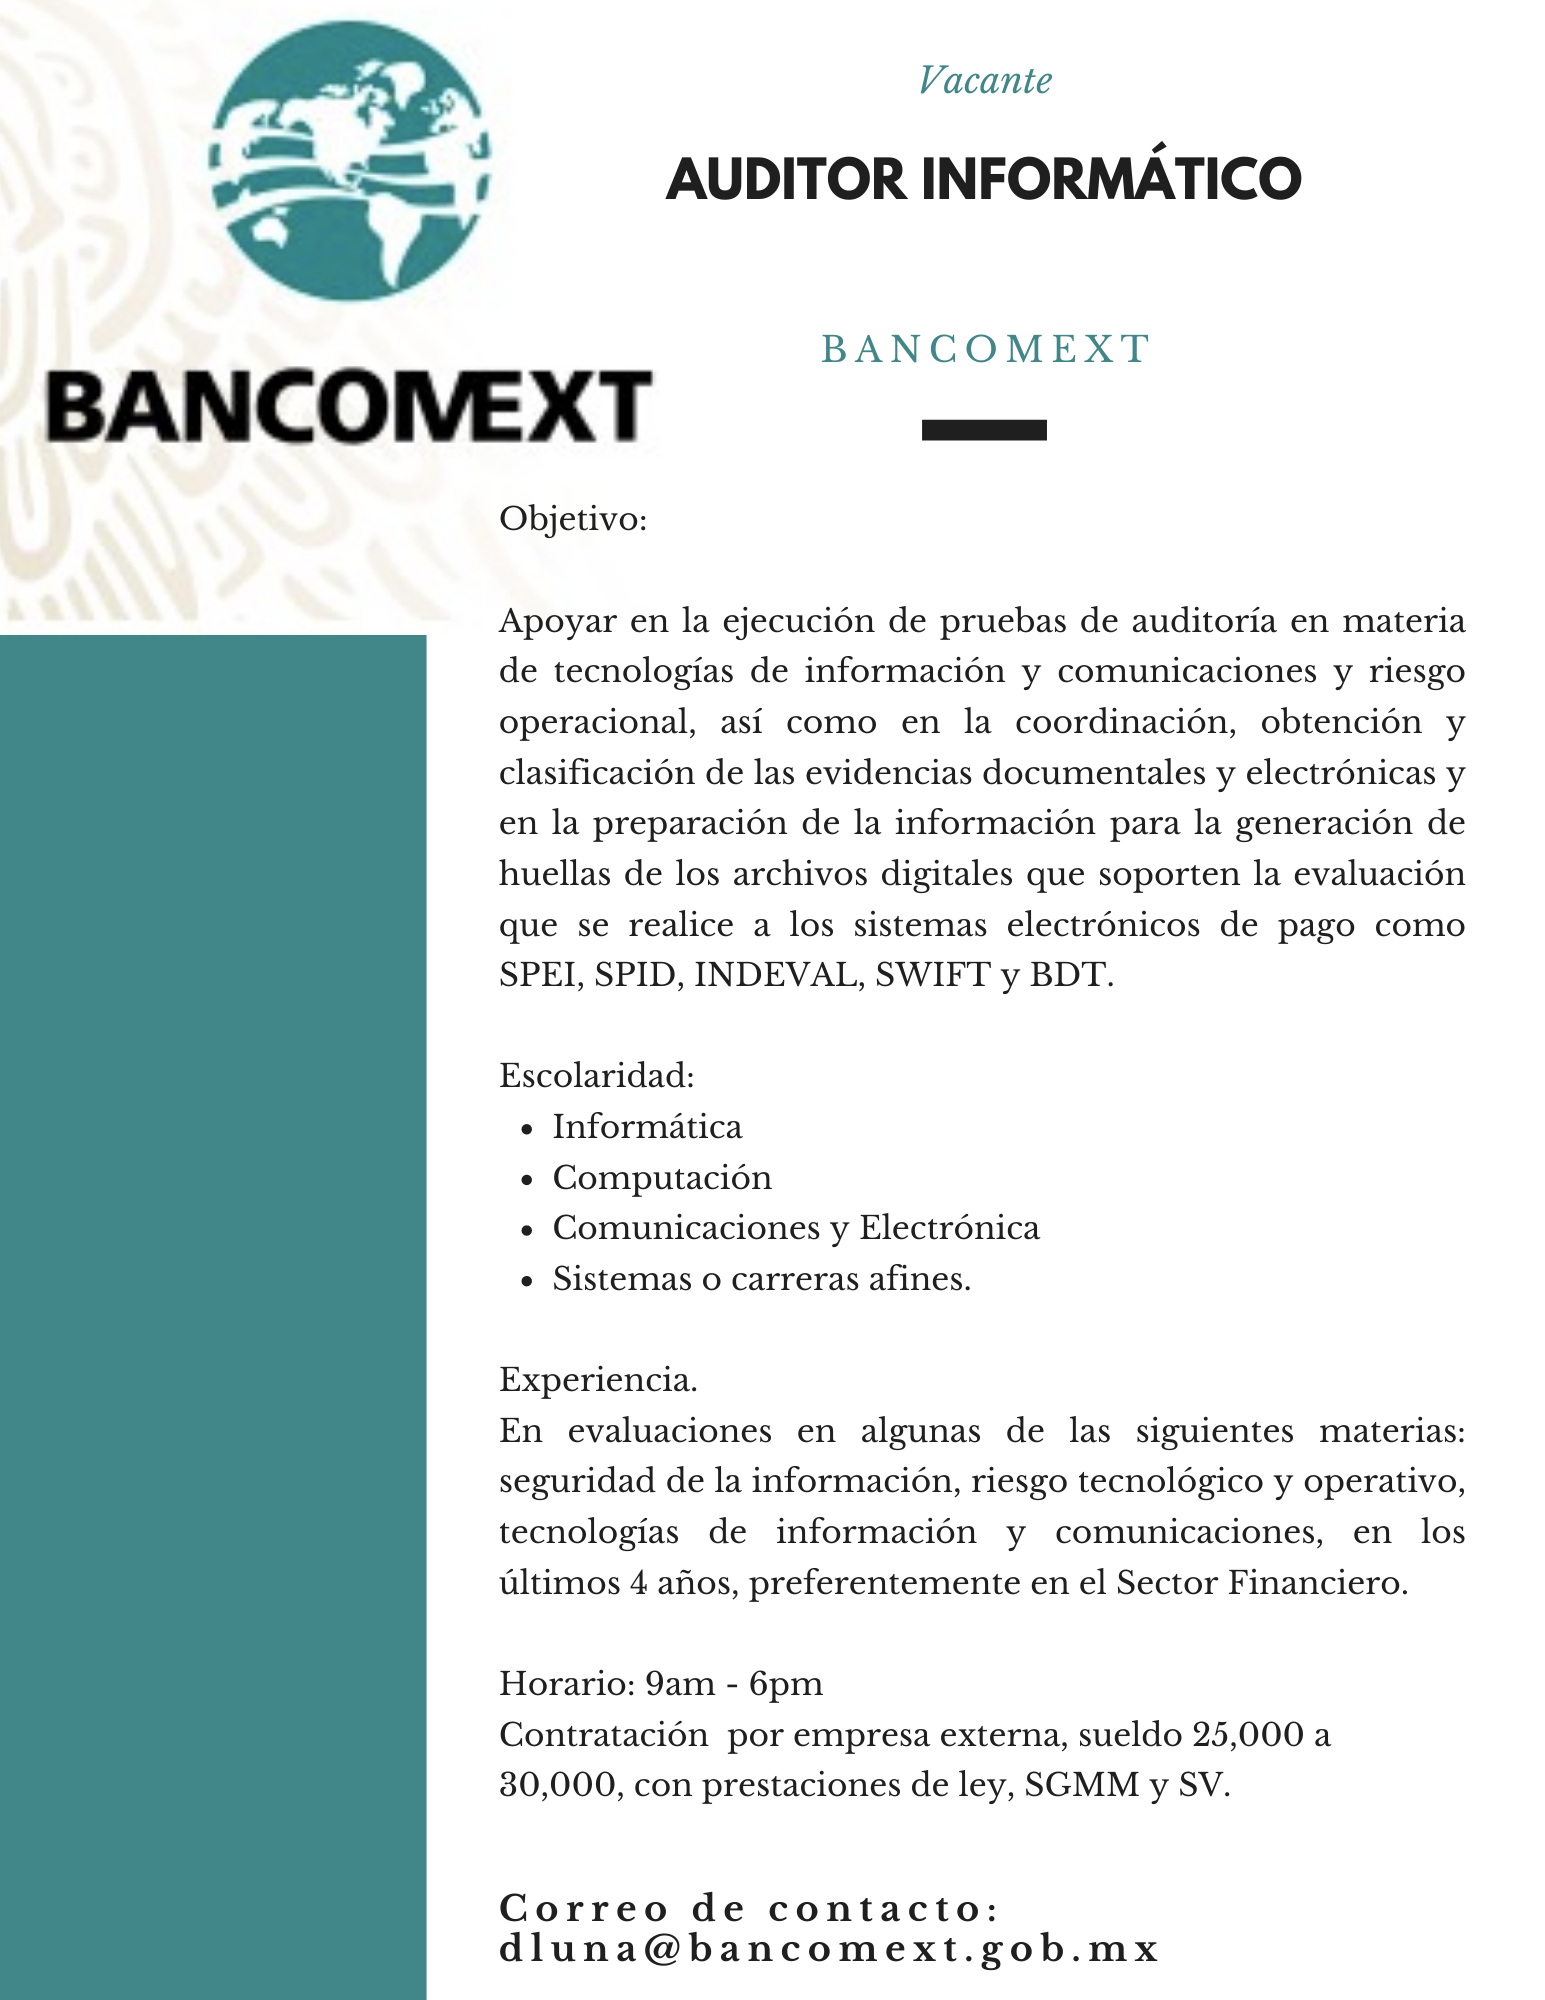 Auditor Informático en Bancomext